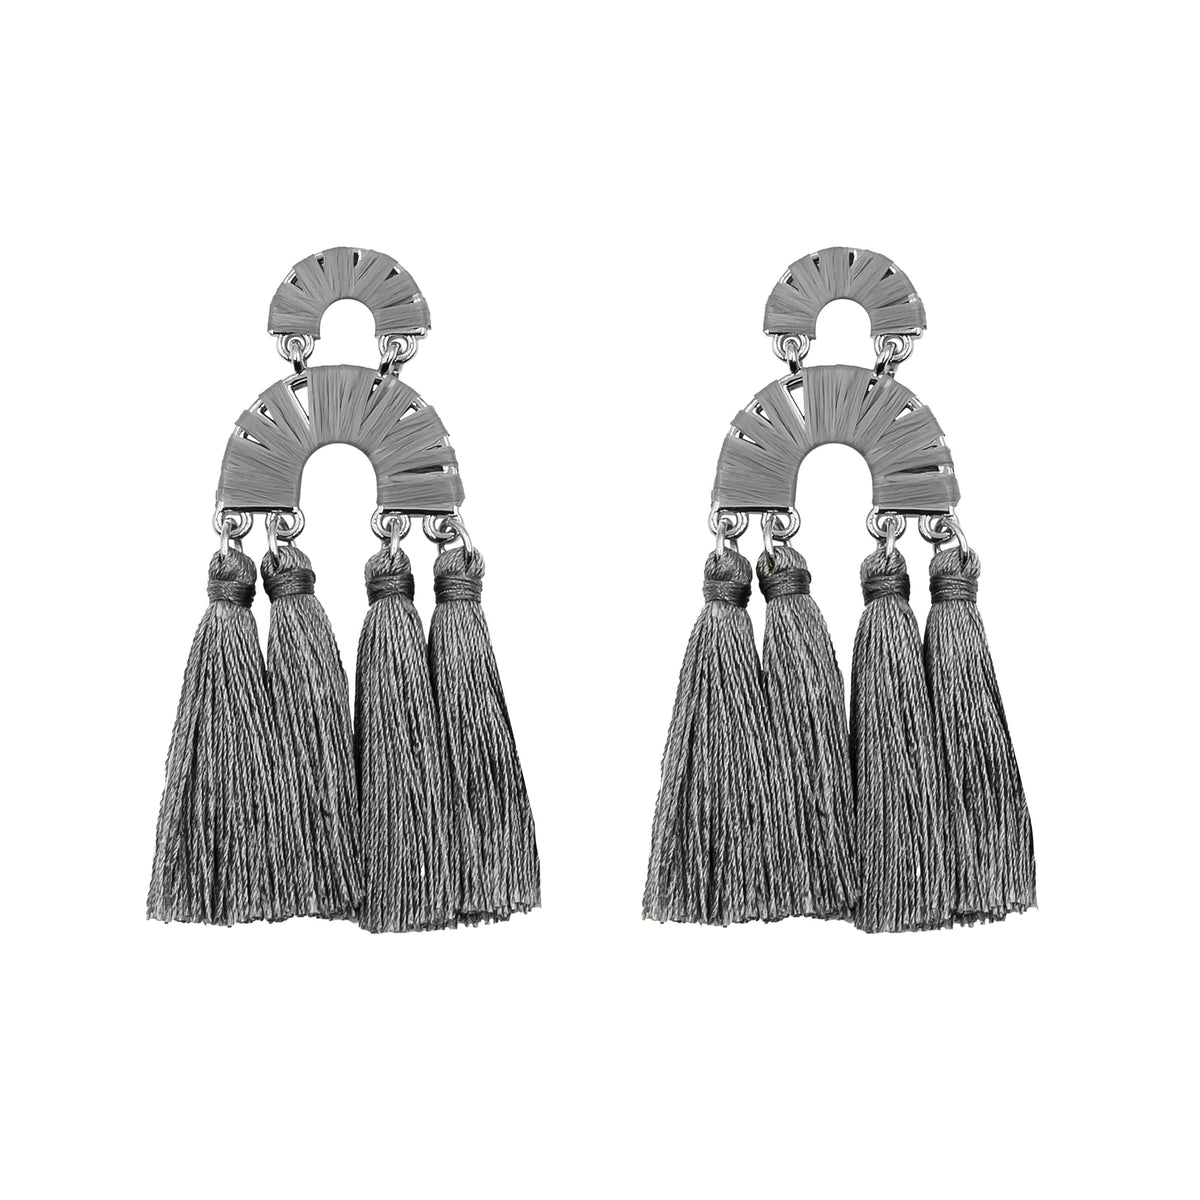 Collezione Pavlova - Orecchini Misty in argento, gioielli di alta qualità per uomo e donna